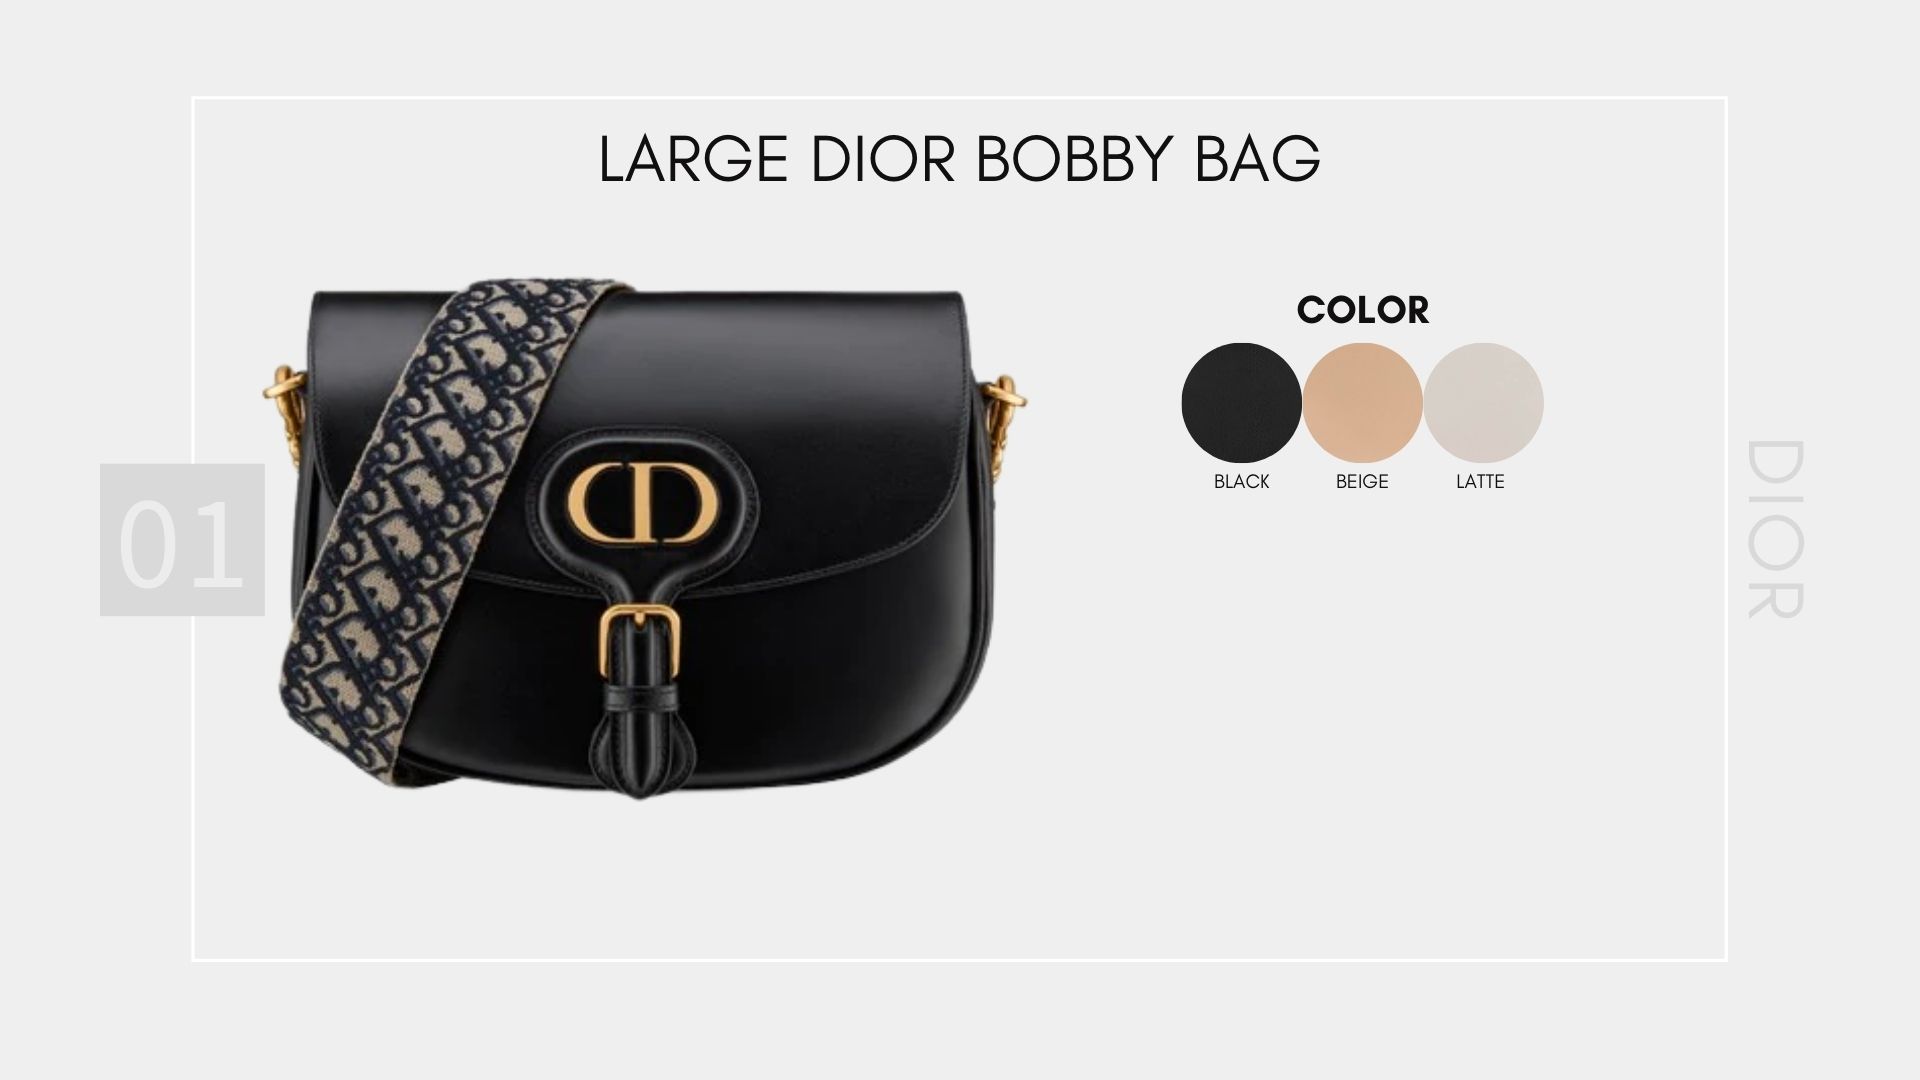 รวม Item Dior Collection ใหม่  Large Dior Bobby Bag 